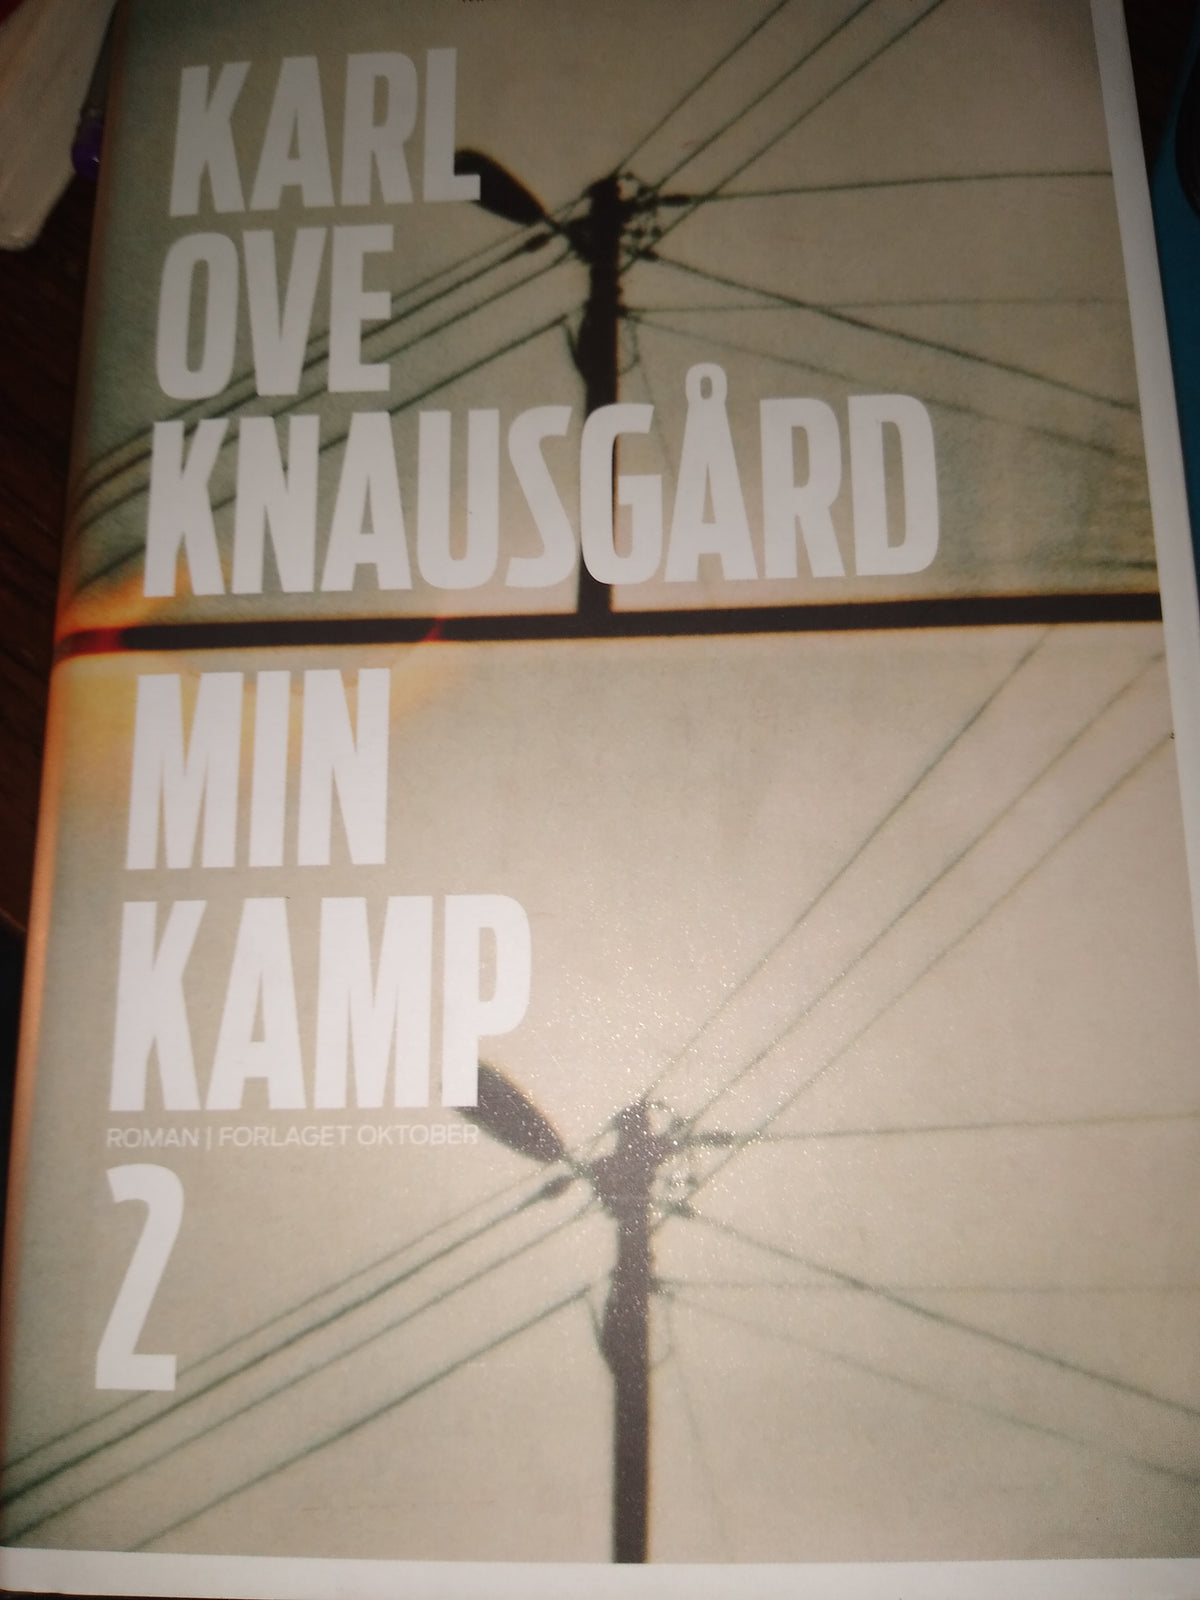 Min Kamp 2 by Karl ove Knausgard Swedish